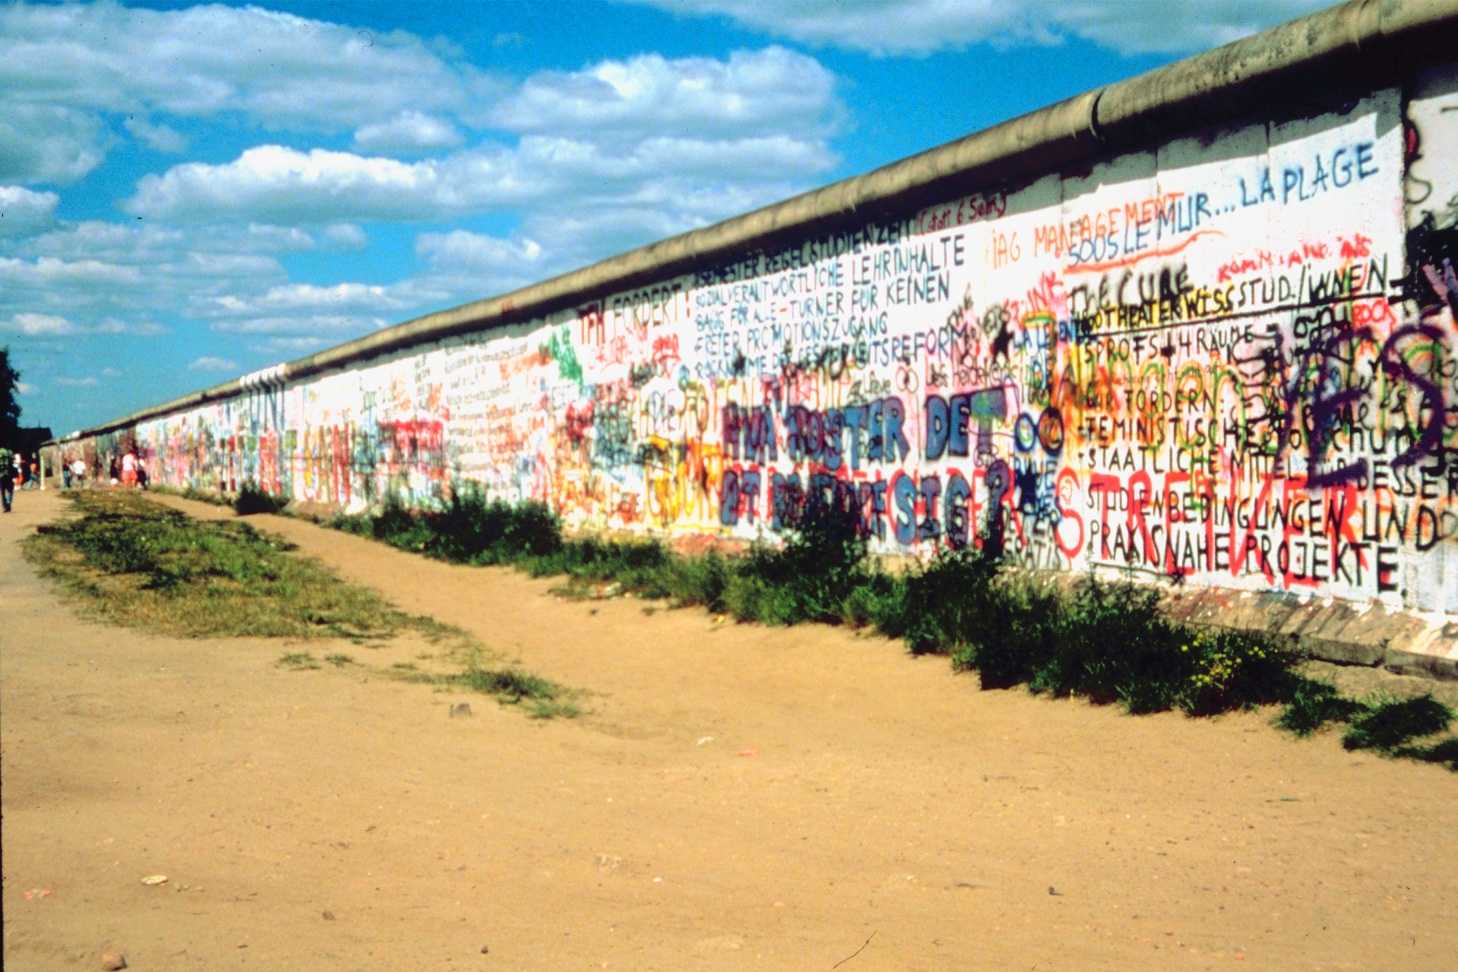 Berlino - Fuga per la libertà, History celebra la caduta del muro di Berlino | Digitale terrestre: Dtti.it